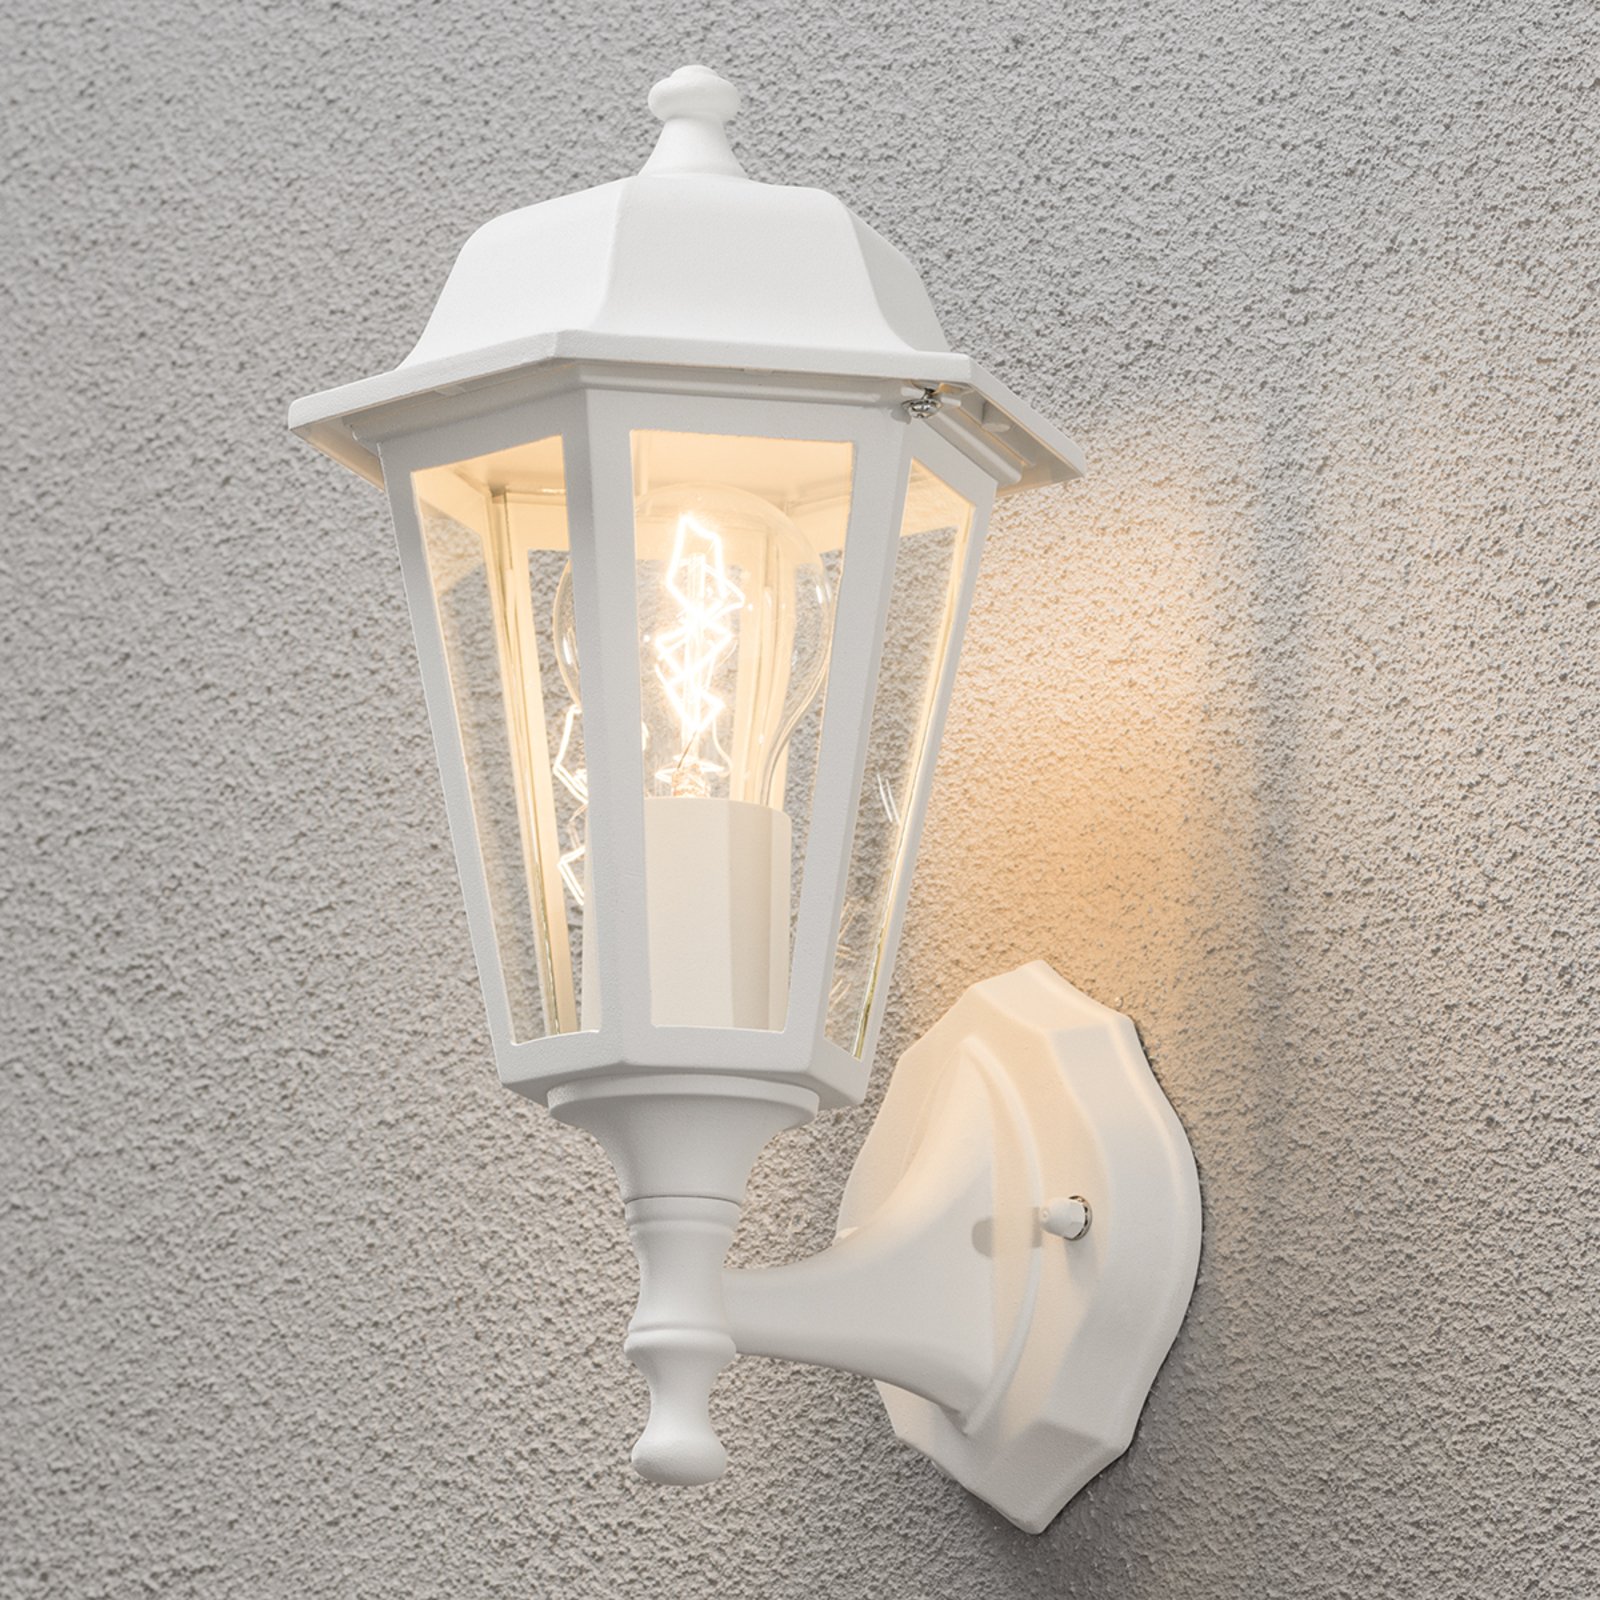 Grado outdoor wall light, white